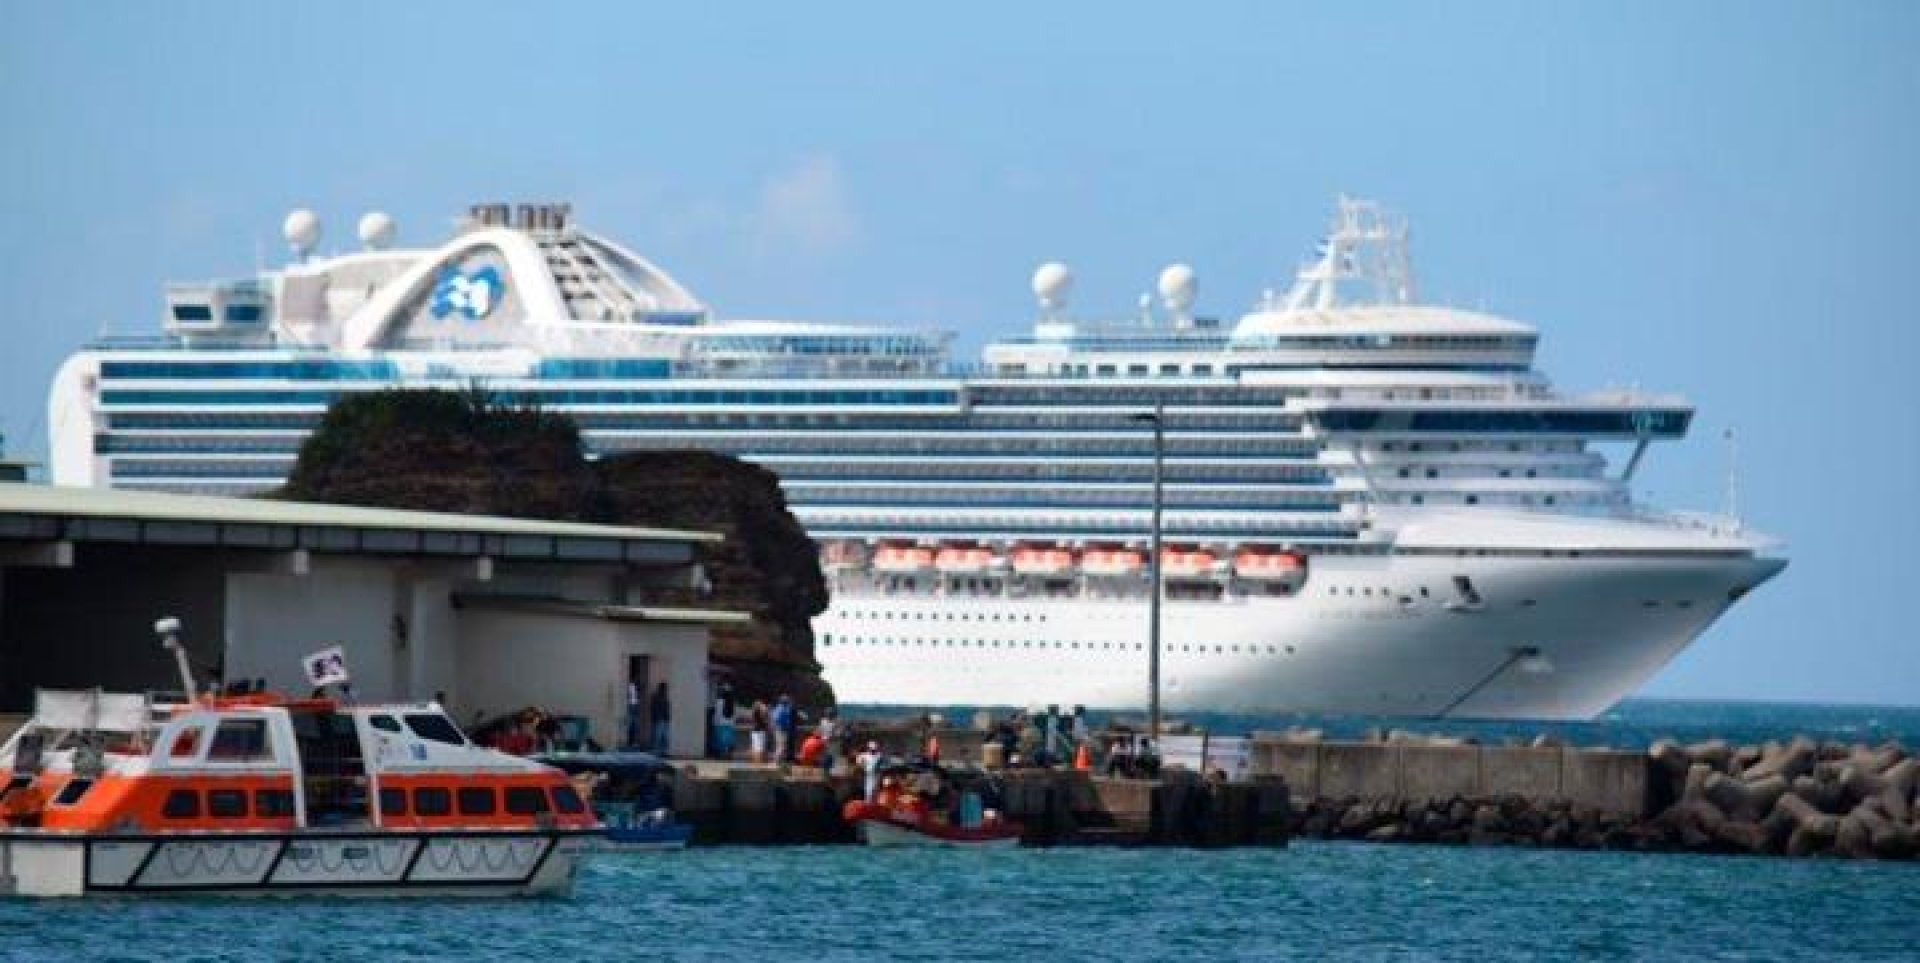 Turistas arribando al puerto de San Juan del Sur en 2020. La embarcación  trajo consigo 3 mil pasajeros y mil 145 tripulantes de diferentes partes del mundo.